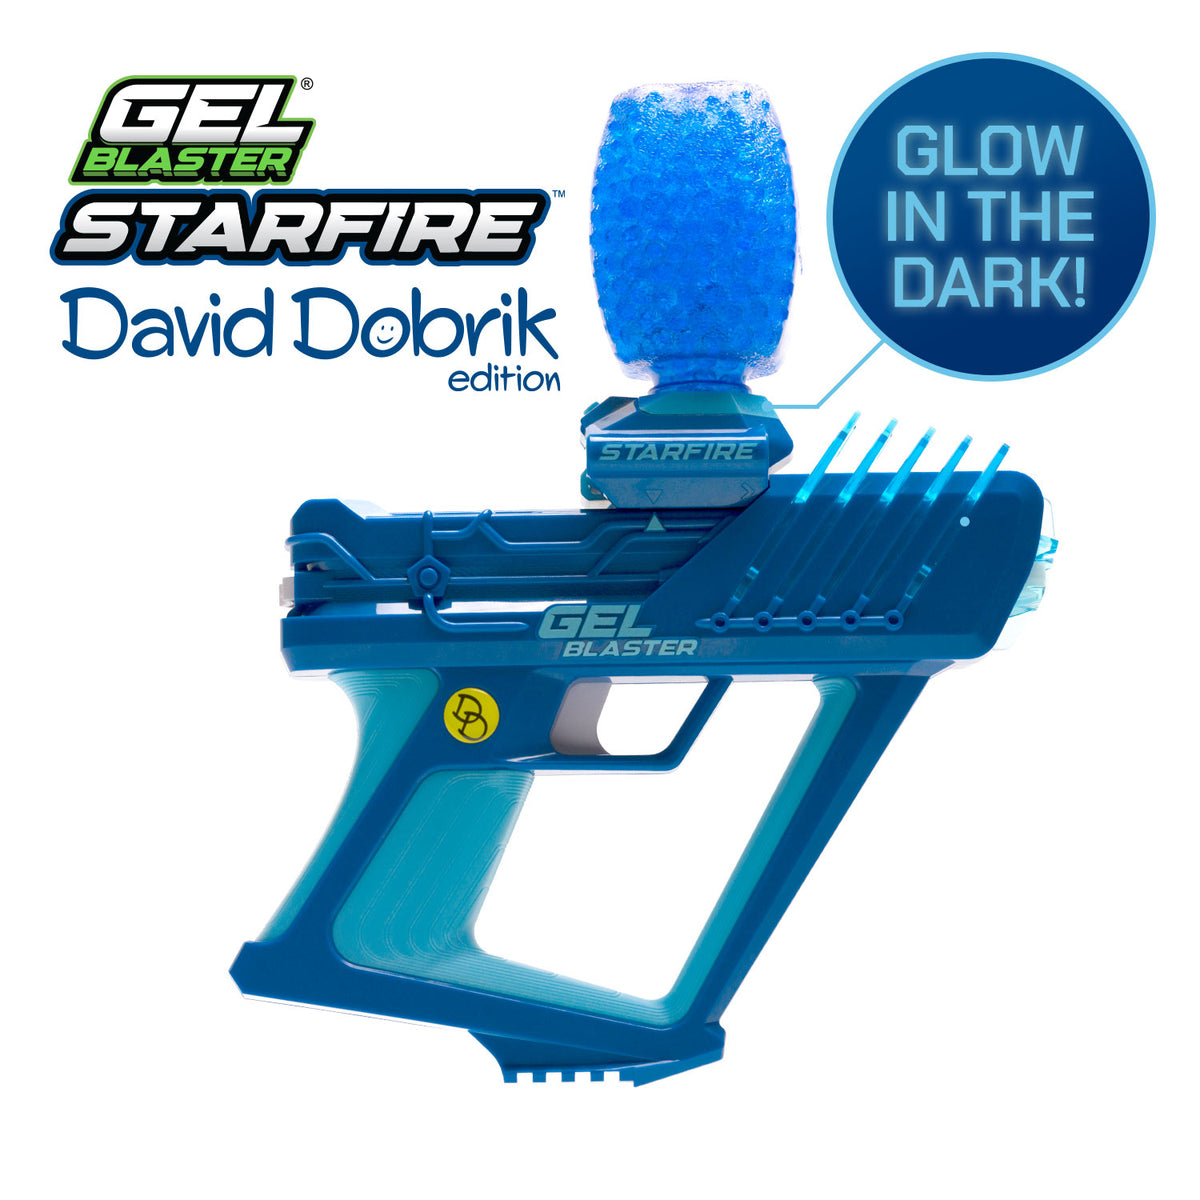 Starfire X David Dobrik